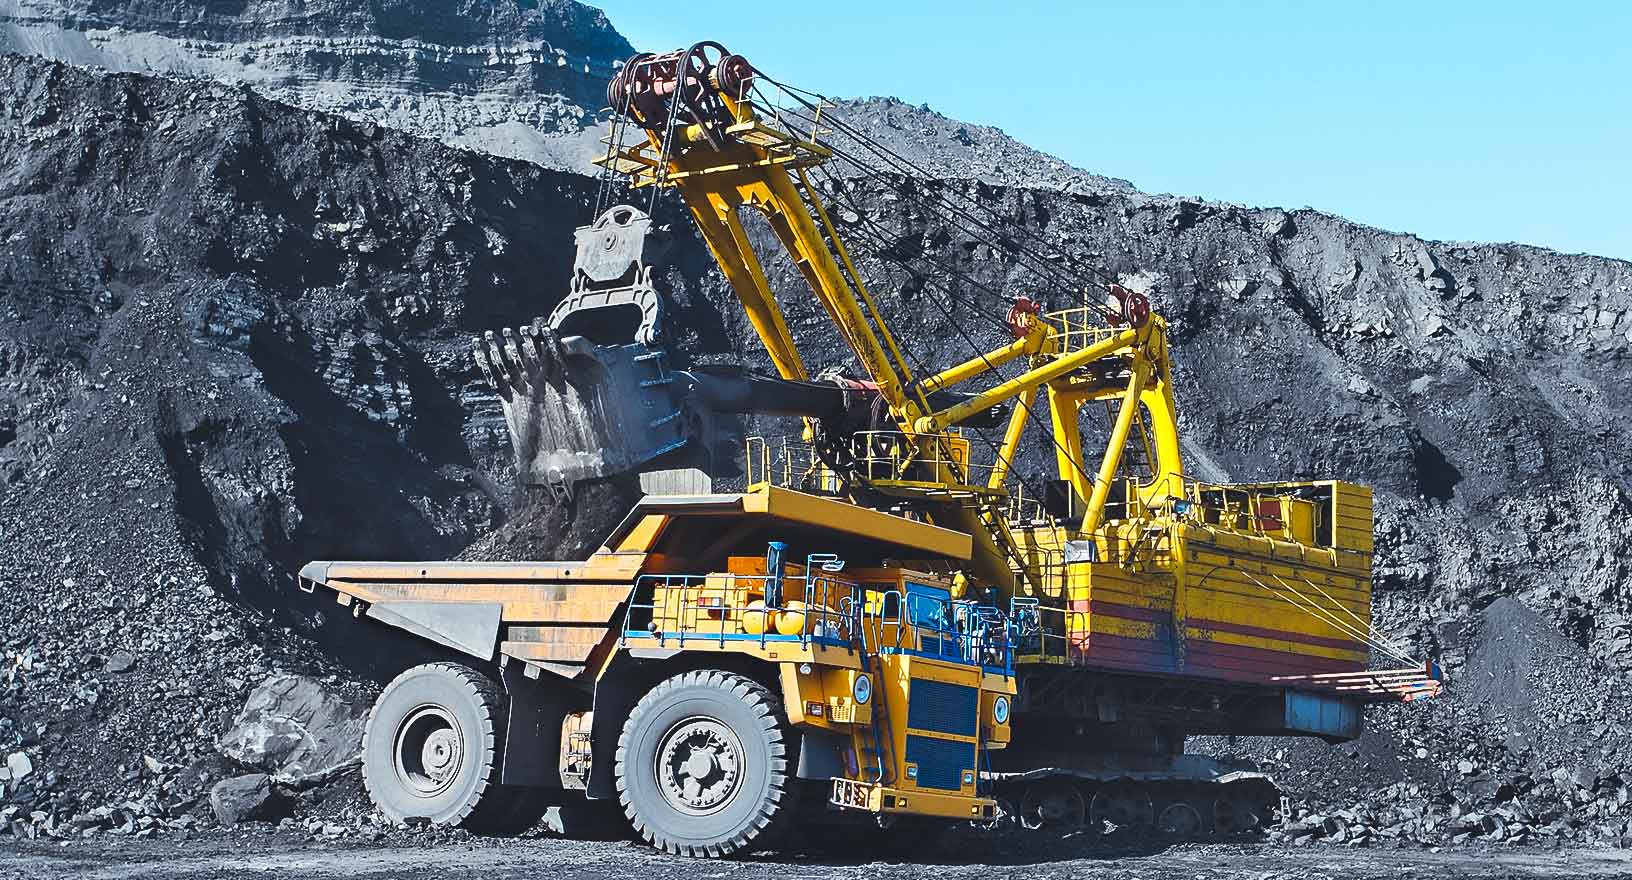 camión minero y cargadora en una mina de carbón 